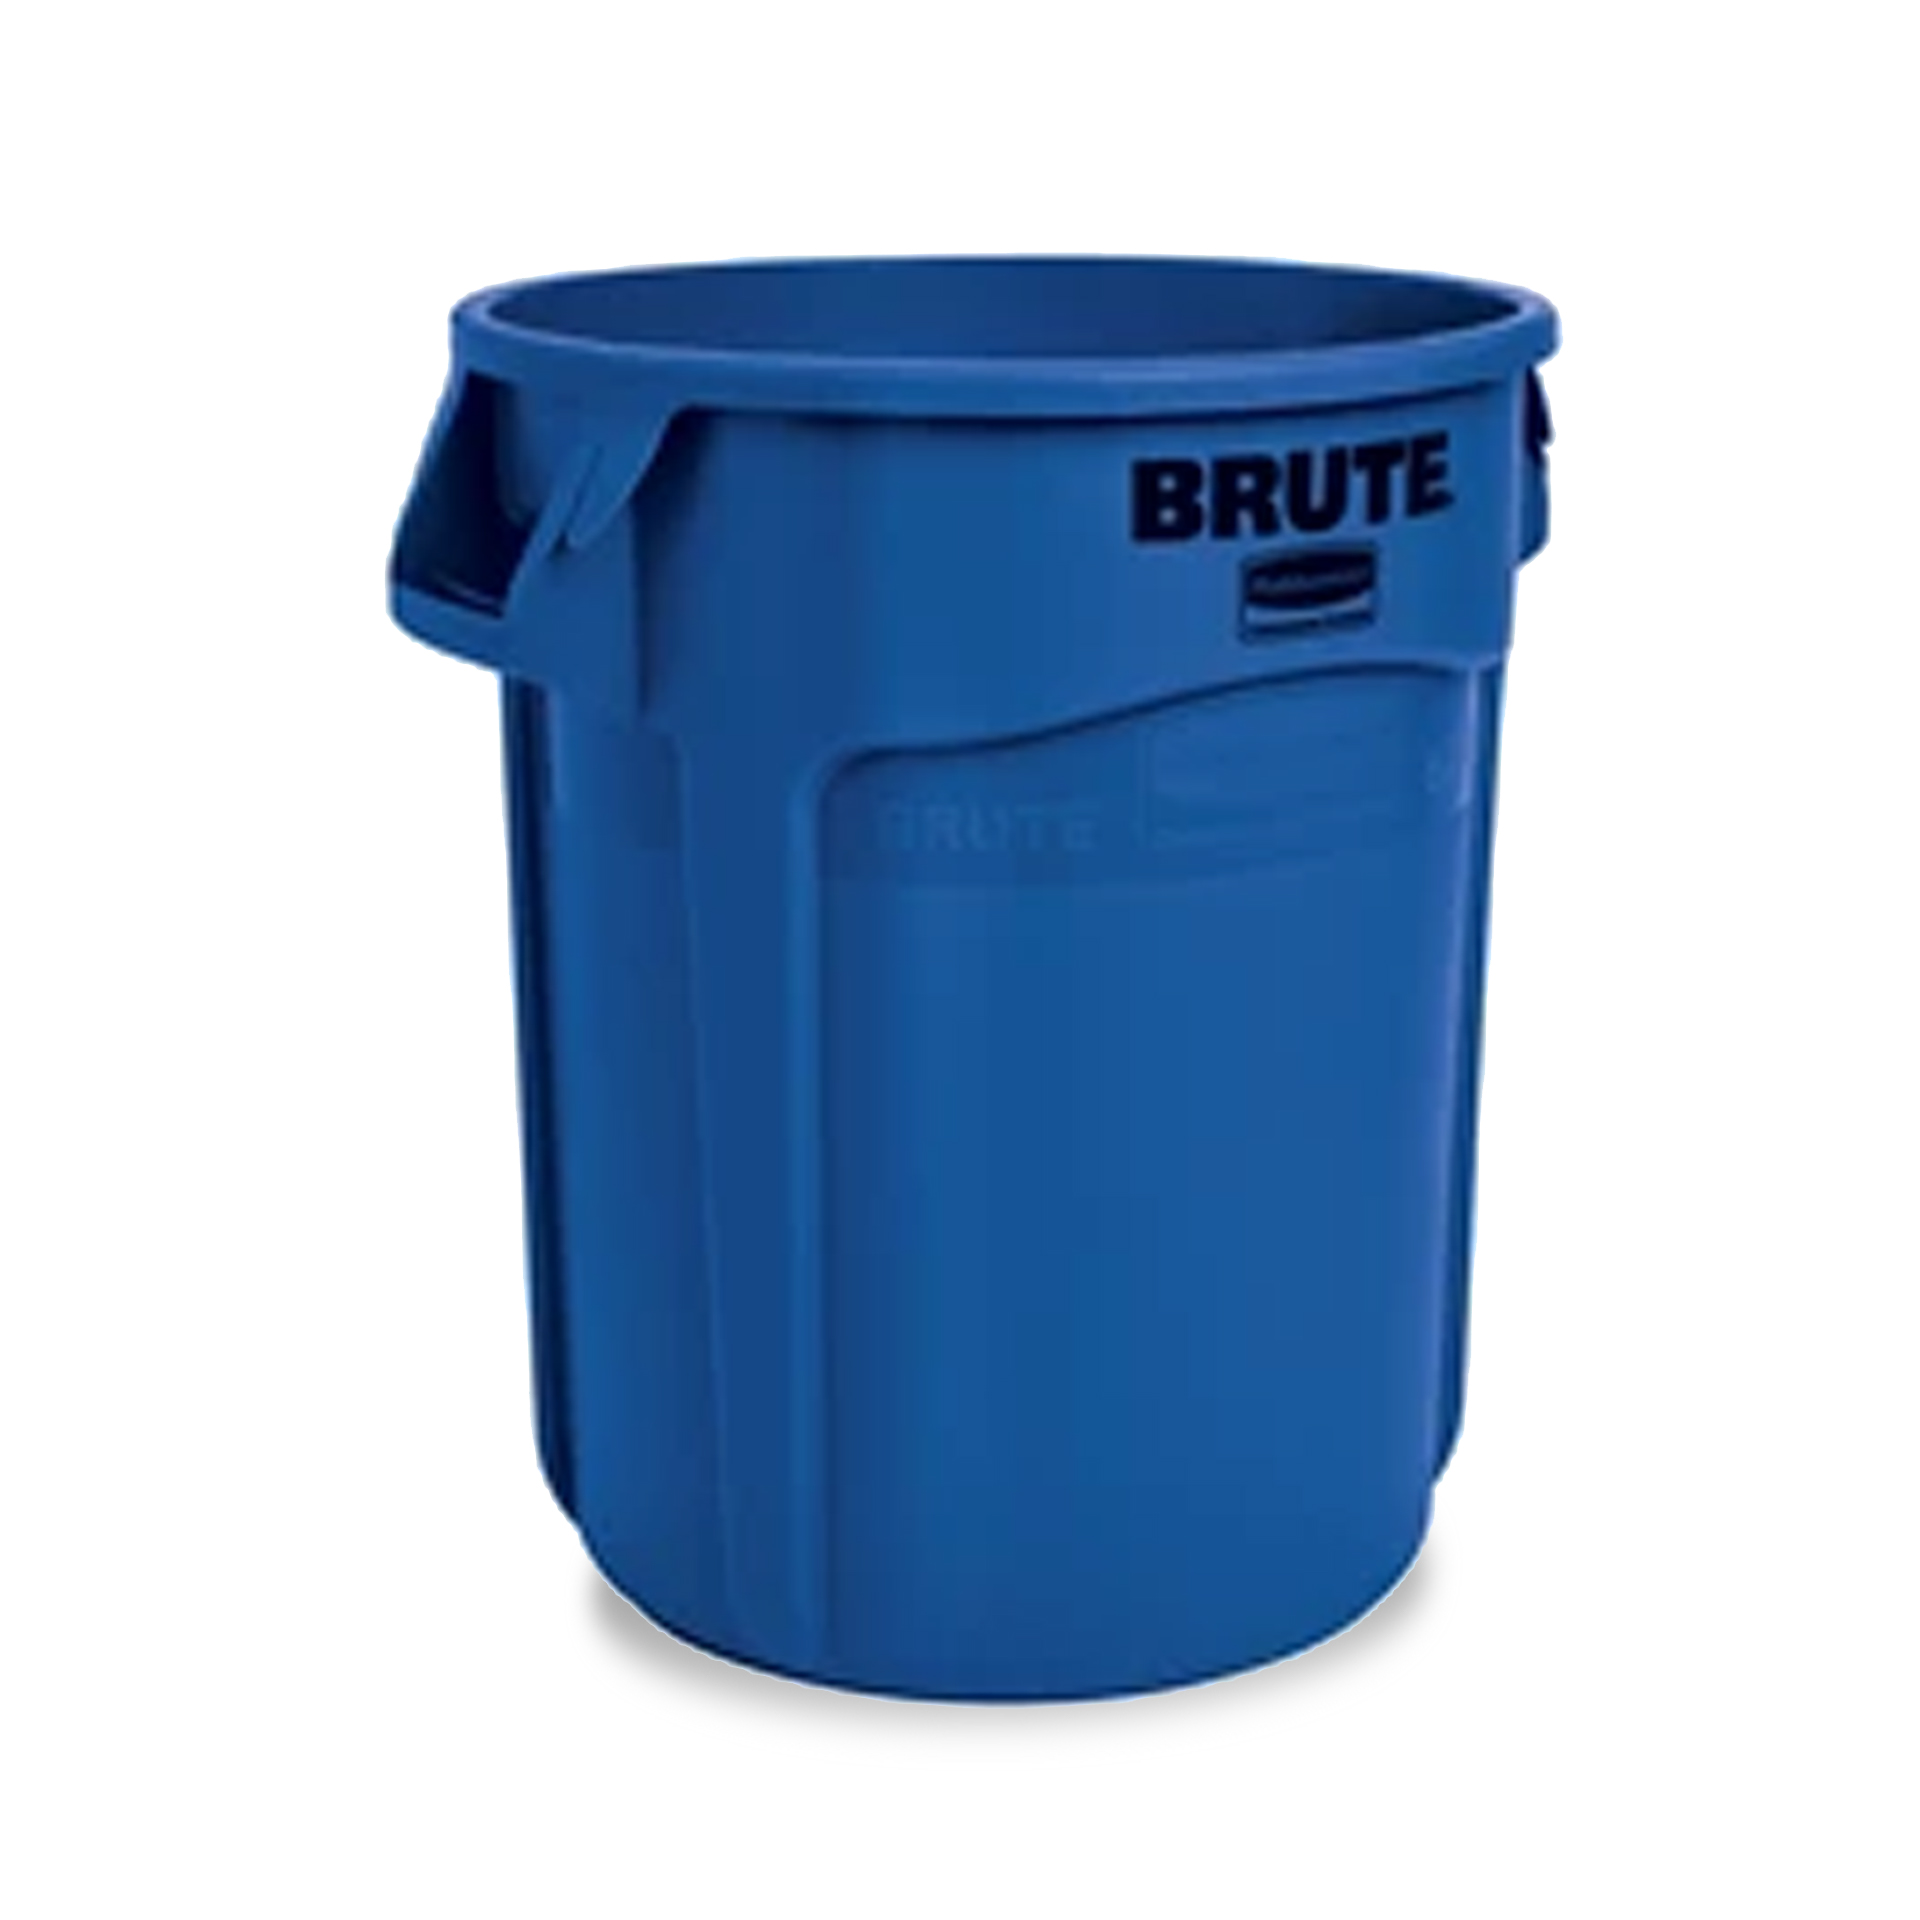 ถังอเนกประสงค์ ทรงกลม (ไม่รวมฝา) BRUTE™ ใส่อาหารได้ 37.9 ลิตร สีน้ำเงิน